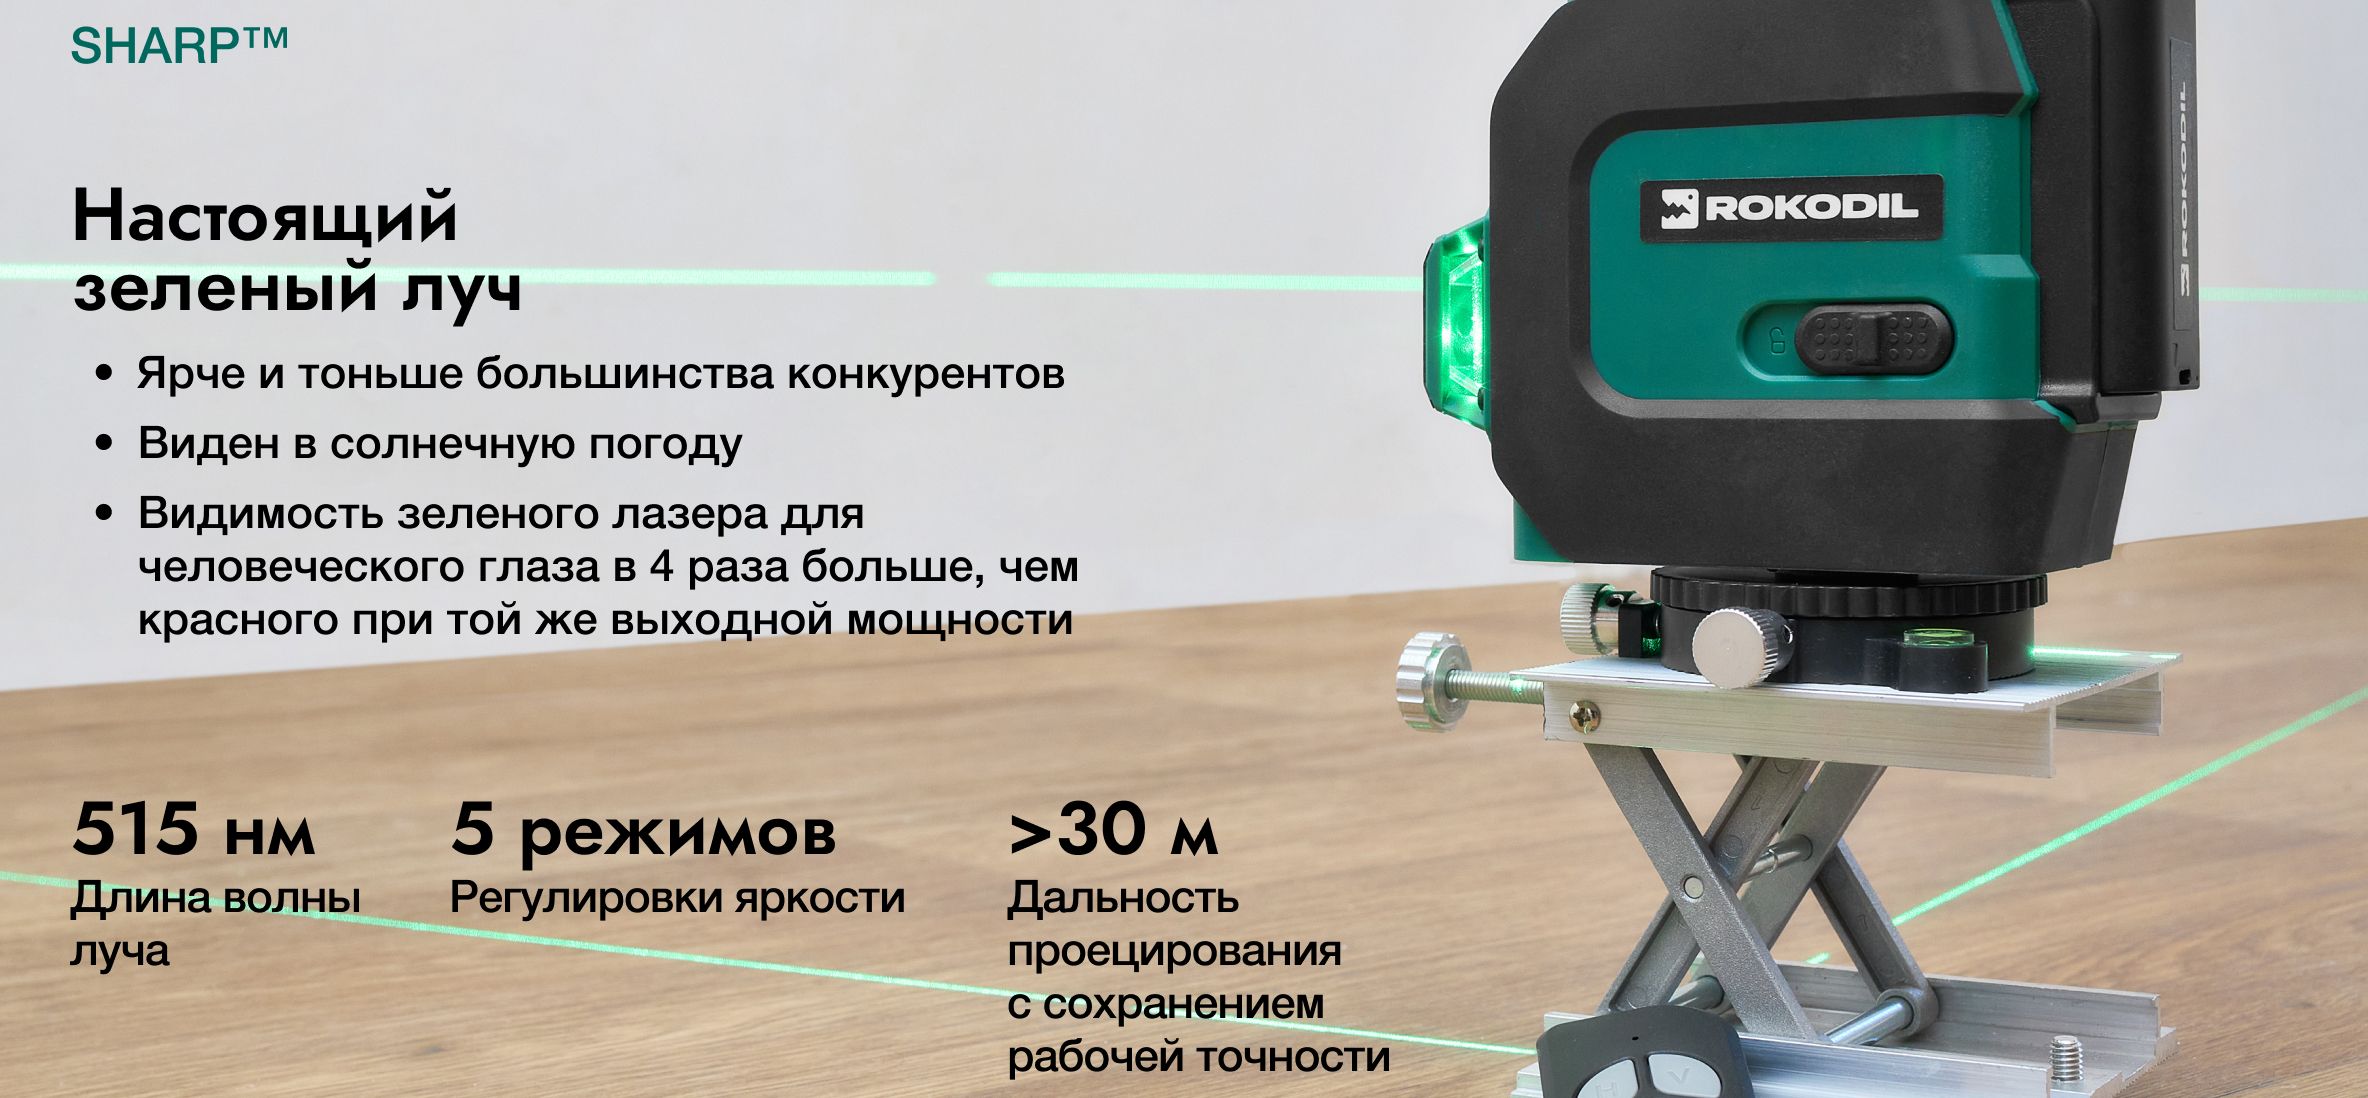 Лазерный уровень rokodil ray Pro 3d. Лазерный уровень rokodil ray Max. Rokodil ray Max лазерный уровень запчасти. Лазерный уровень rokodil ray Pro / 3d, 360 градусов, 12 линий, зеленый Луч.